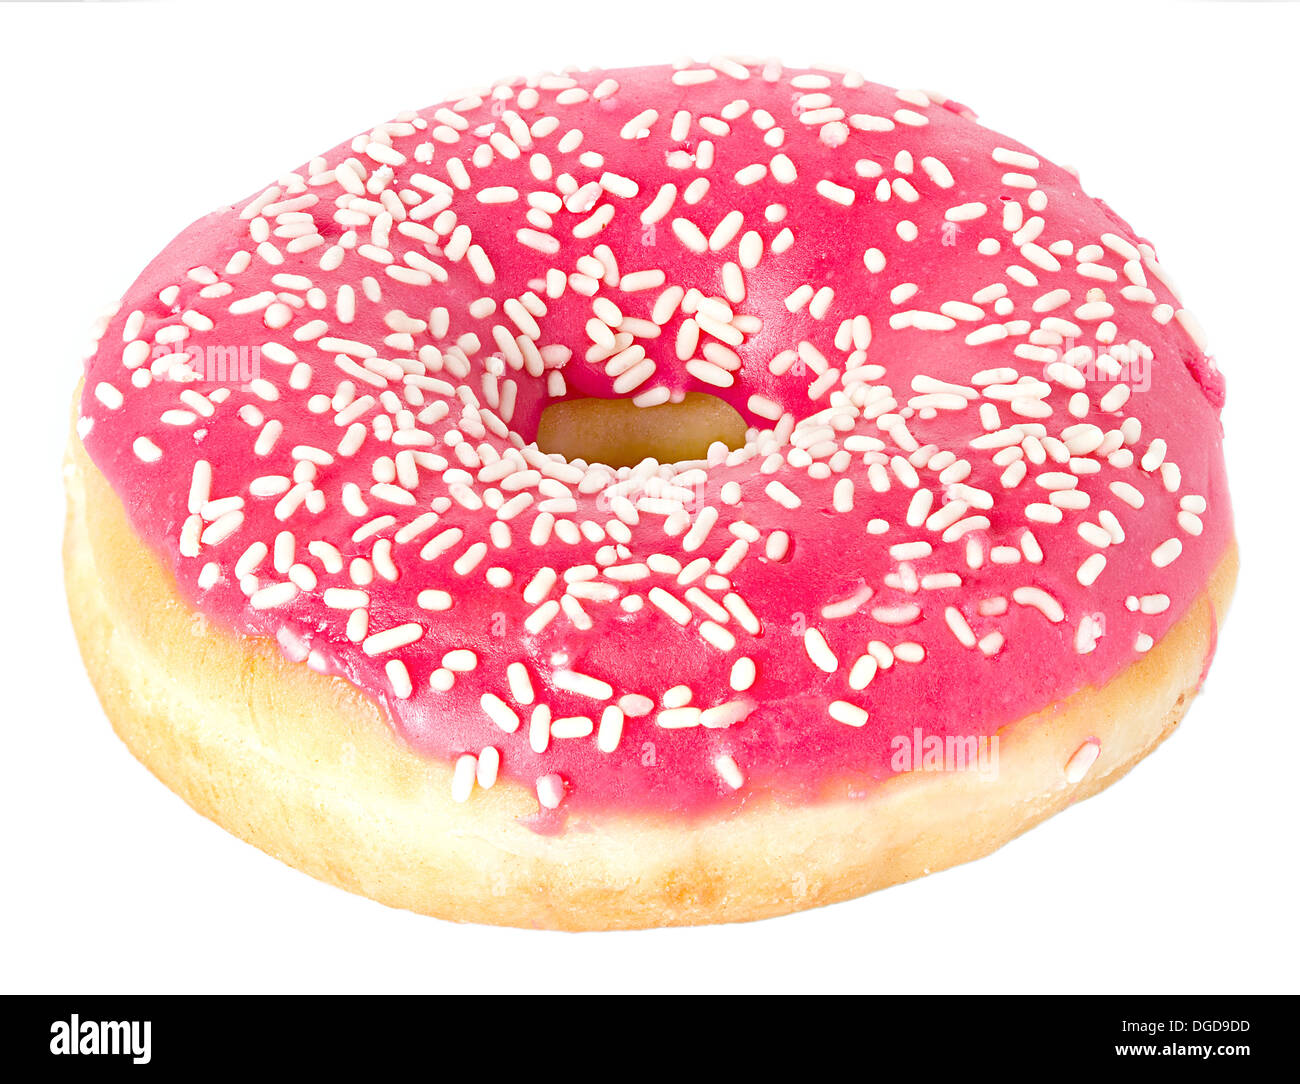 Donut isolated on white background Stock Photo